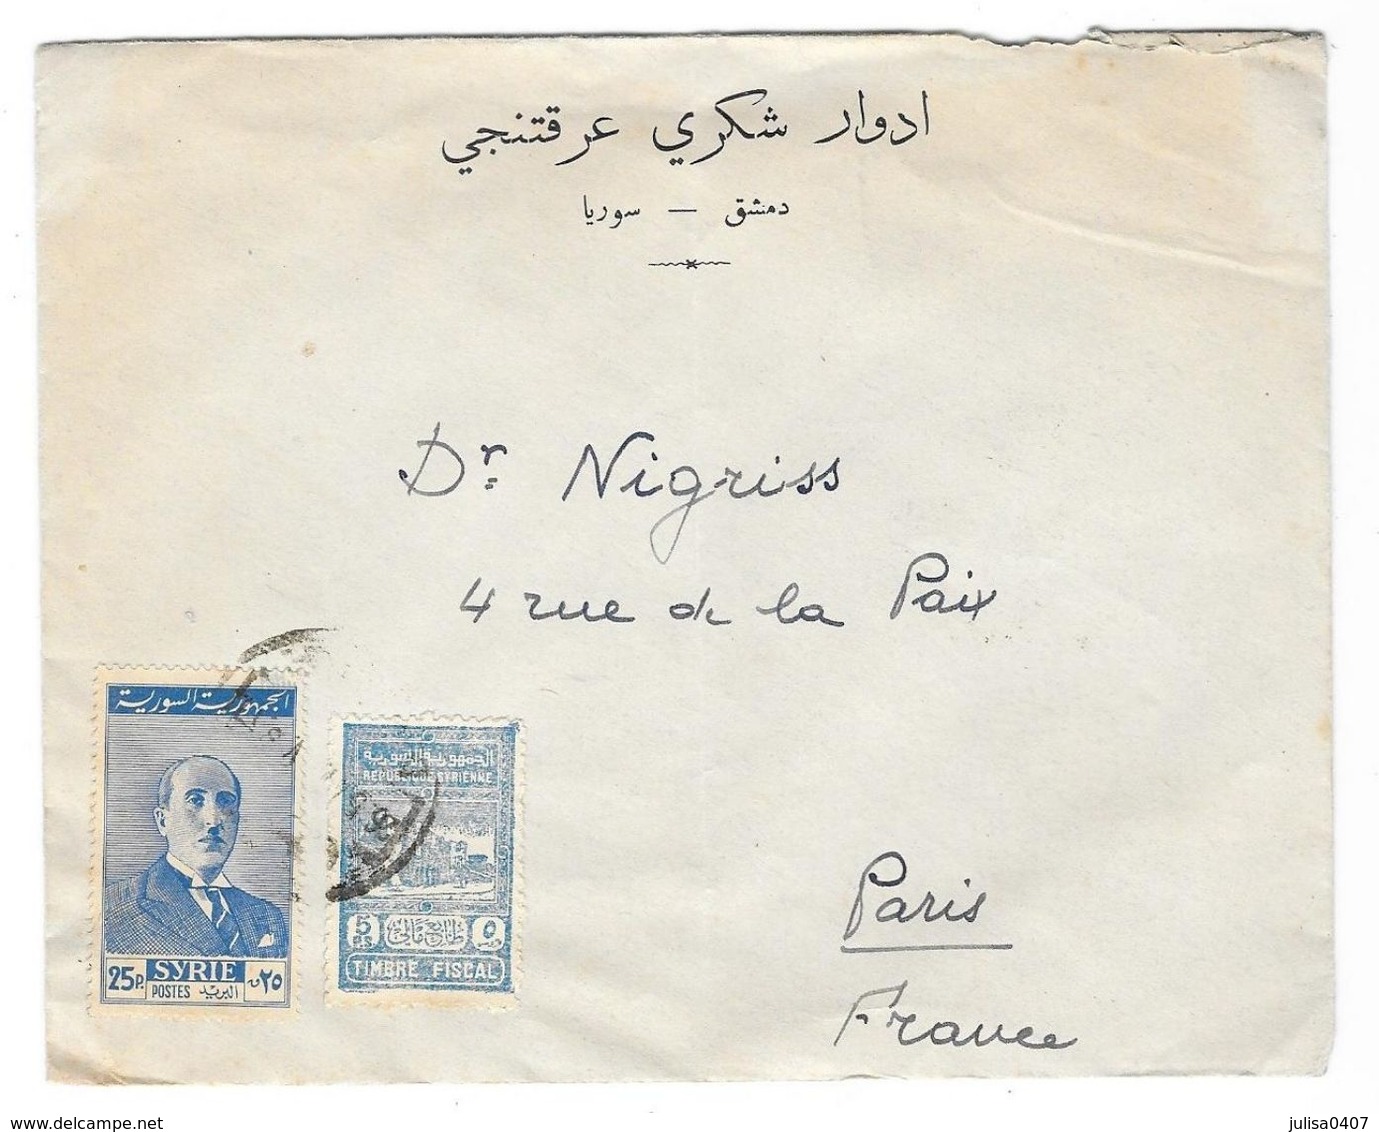 SYRIE  Enveloppe Avec Timbre Fiscal DAMAS à PARIS 1947(?) Publicité Edouard Aractingi - Syria